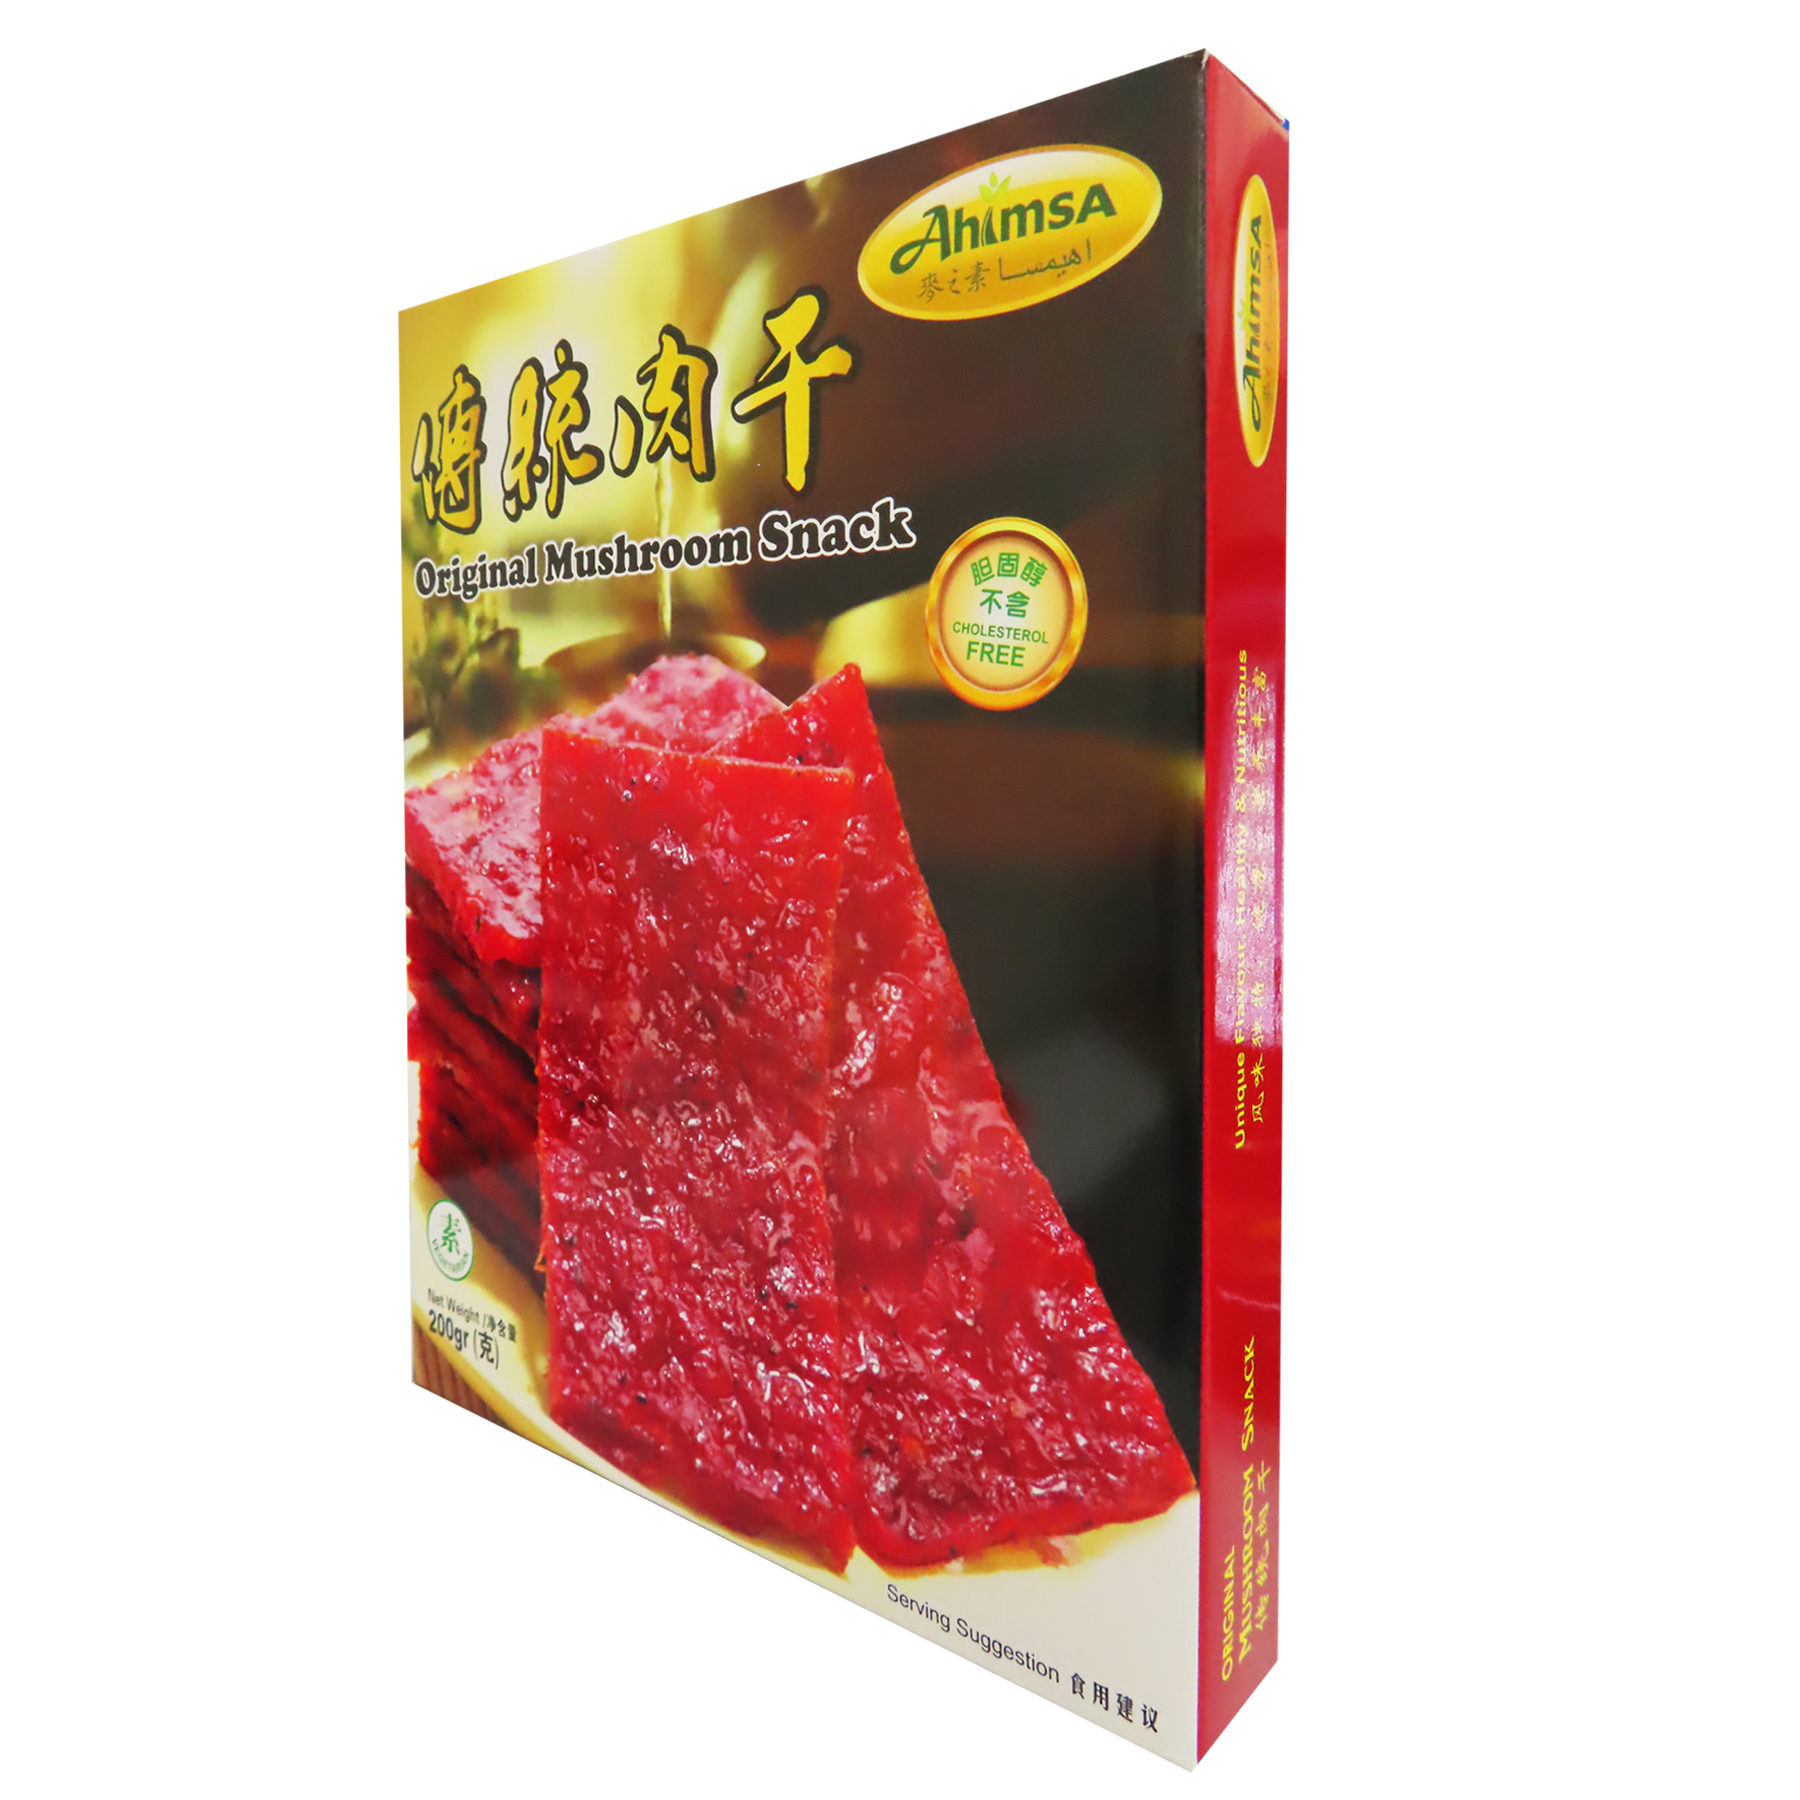 Image Ahimisa Original Mushroom Snack 麦之素 - 传统肉干(原味) 200grams